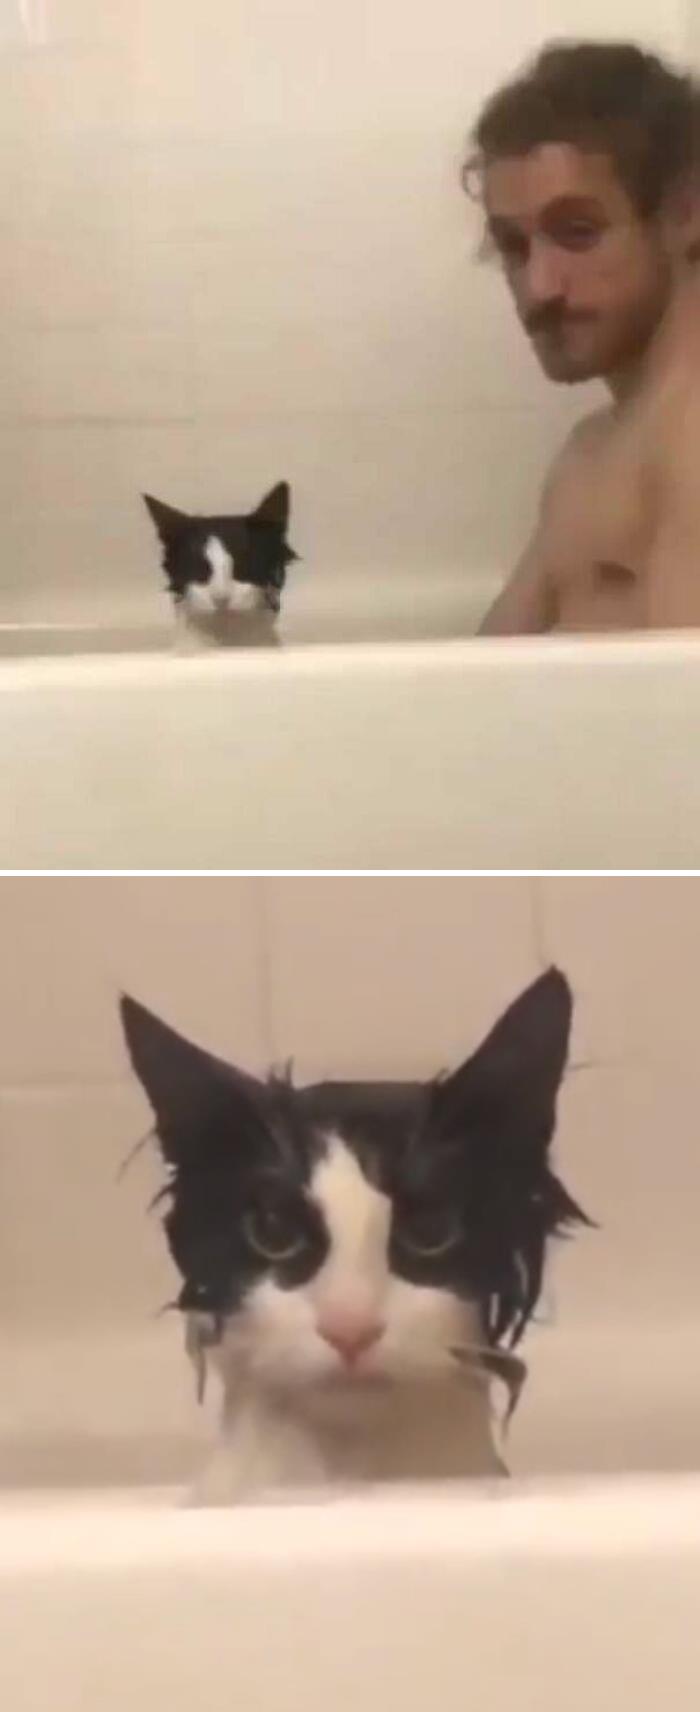 Bu kedi kesinlikle küvete girdiğinde ıslanmayı bekliyormuş gibi görünmüyor